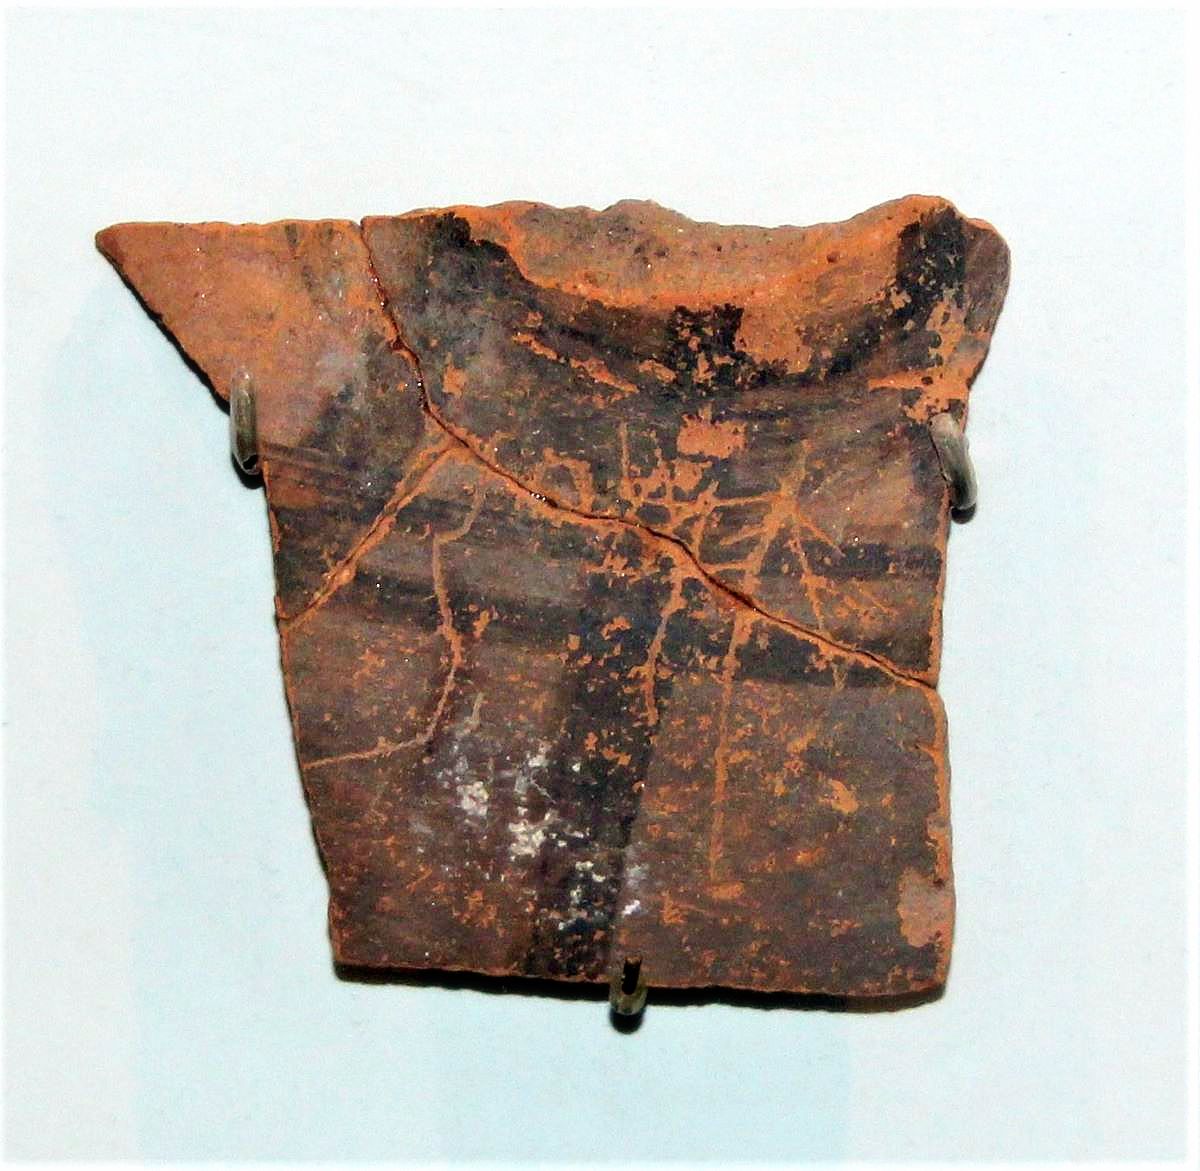 Θραύσμα αγγείου με την αρχαιότερη ως σήμερα επιγραφή που βρέθηκε στην Χαλκιδική. Χρονολογείται περί το 760-700 π.Χ.